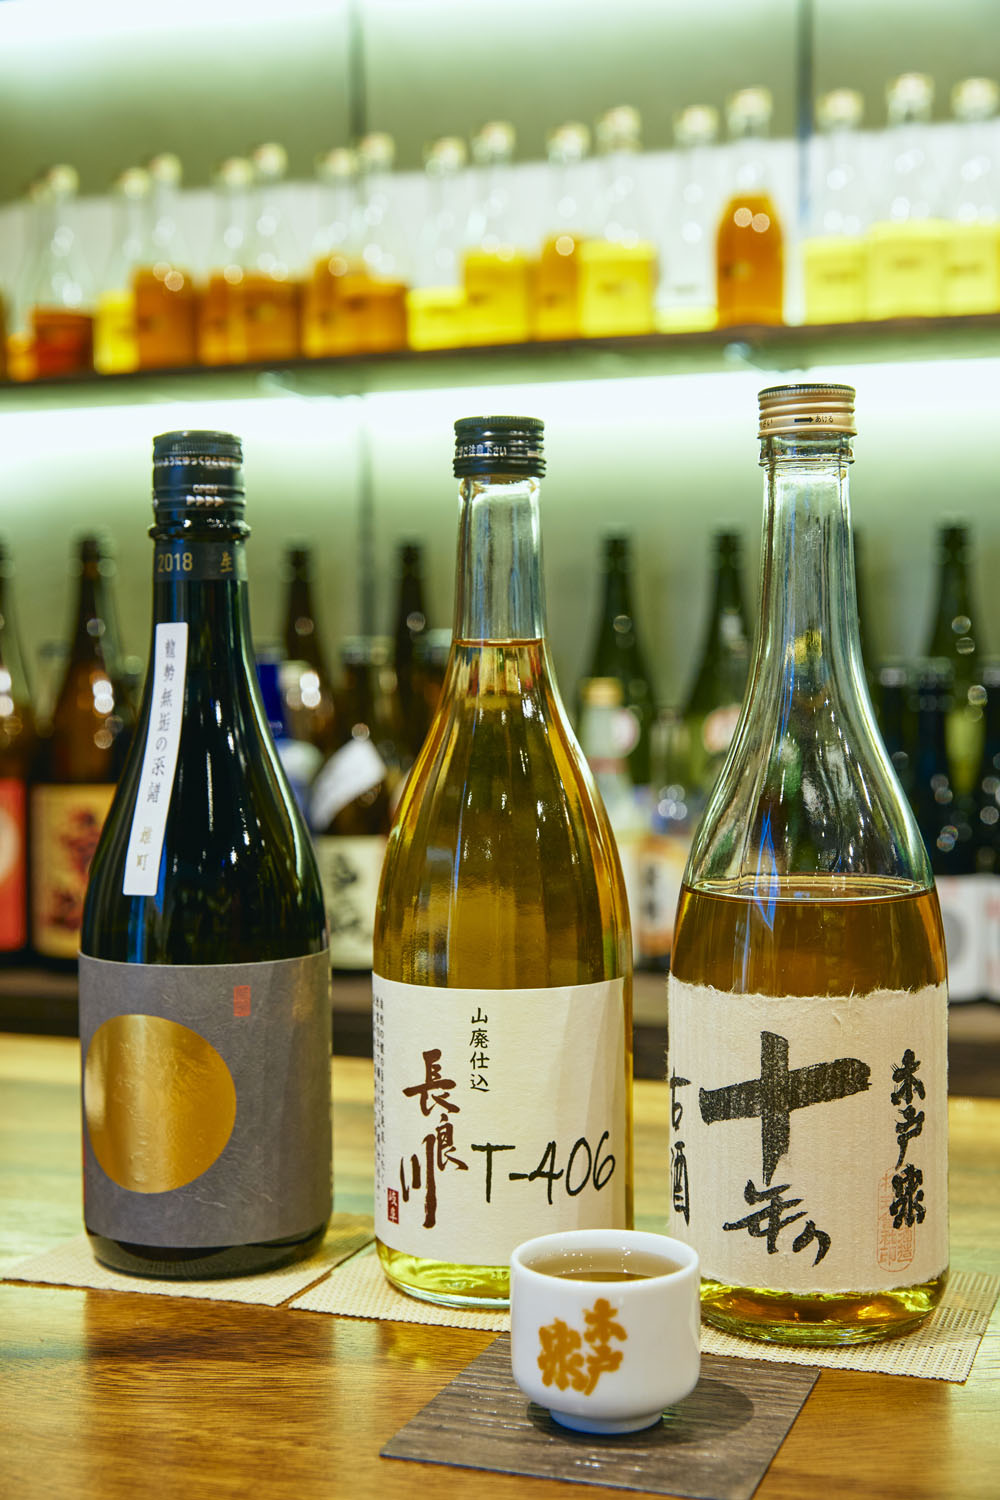 左から「龍勢」無垢の系譜2018年1980円、「長良川」T-406山廃純米大吟醸熟成酒2005年4351円など。